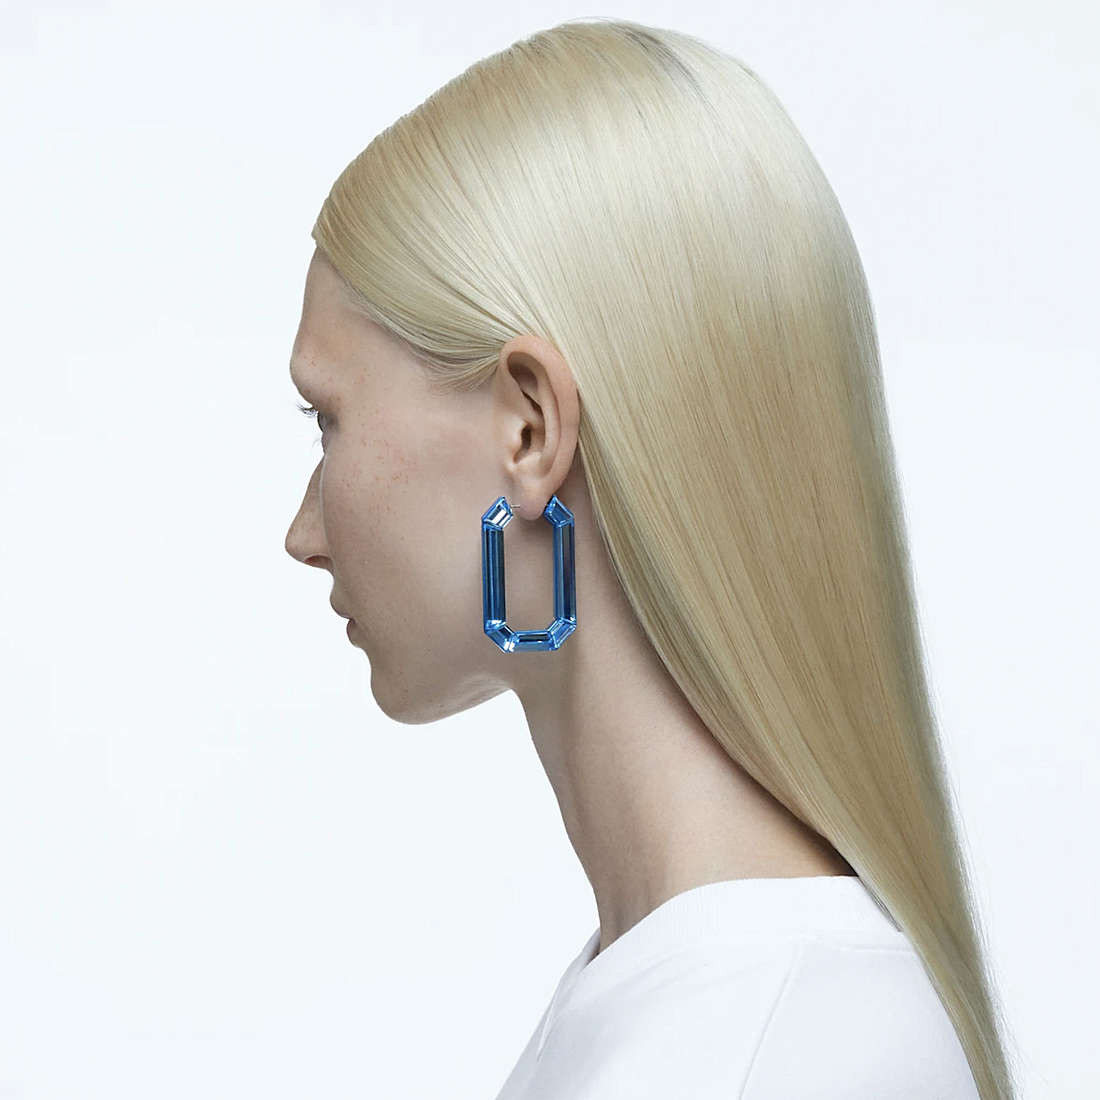 Swarovski earrings Lucent woman 5633950 wearing